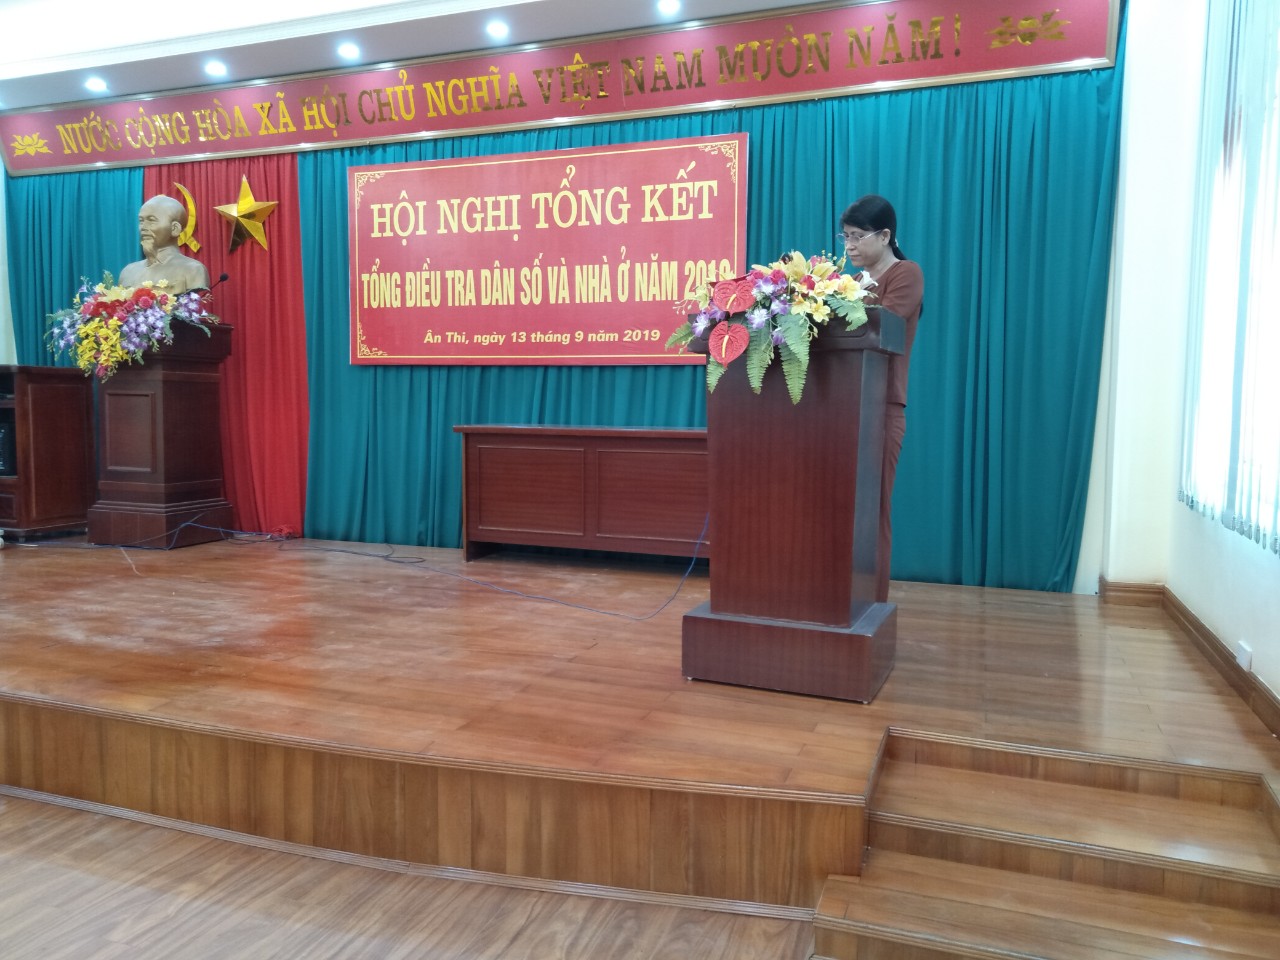 Huyện Ân Thi tổ chức Hội nghị tổng kết công tác Tổng điều tra dân số và nhà ở năm 2019